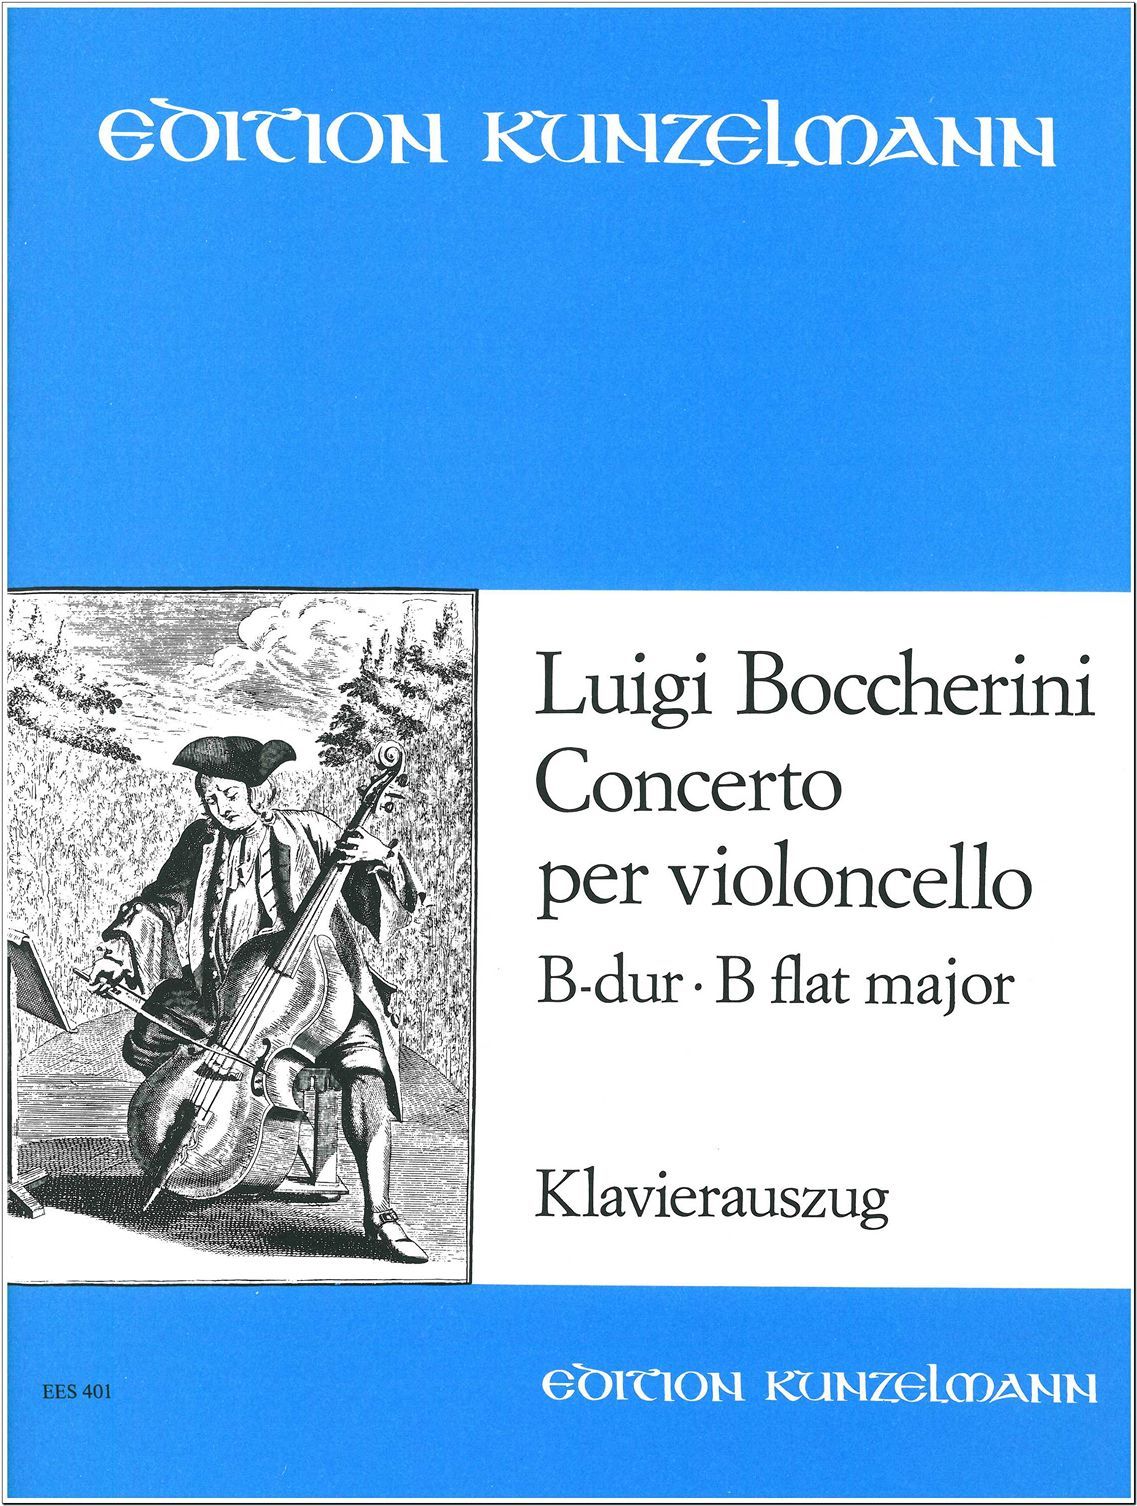 Boccherini Concerto in Bb Major for Cello and Piano